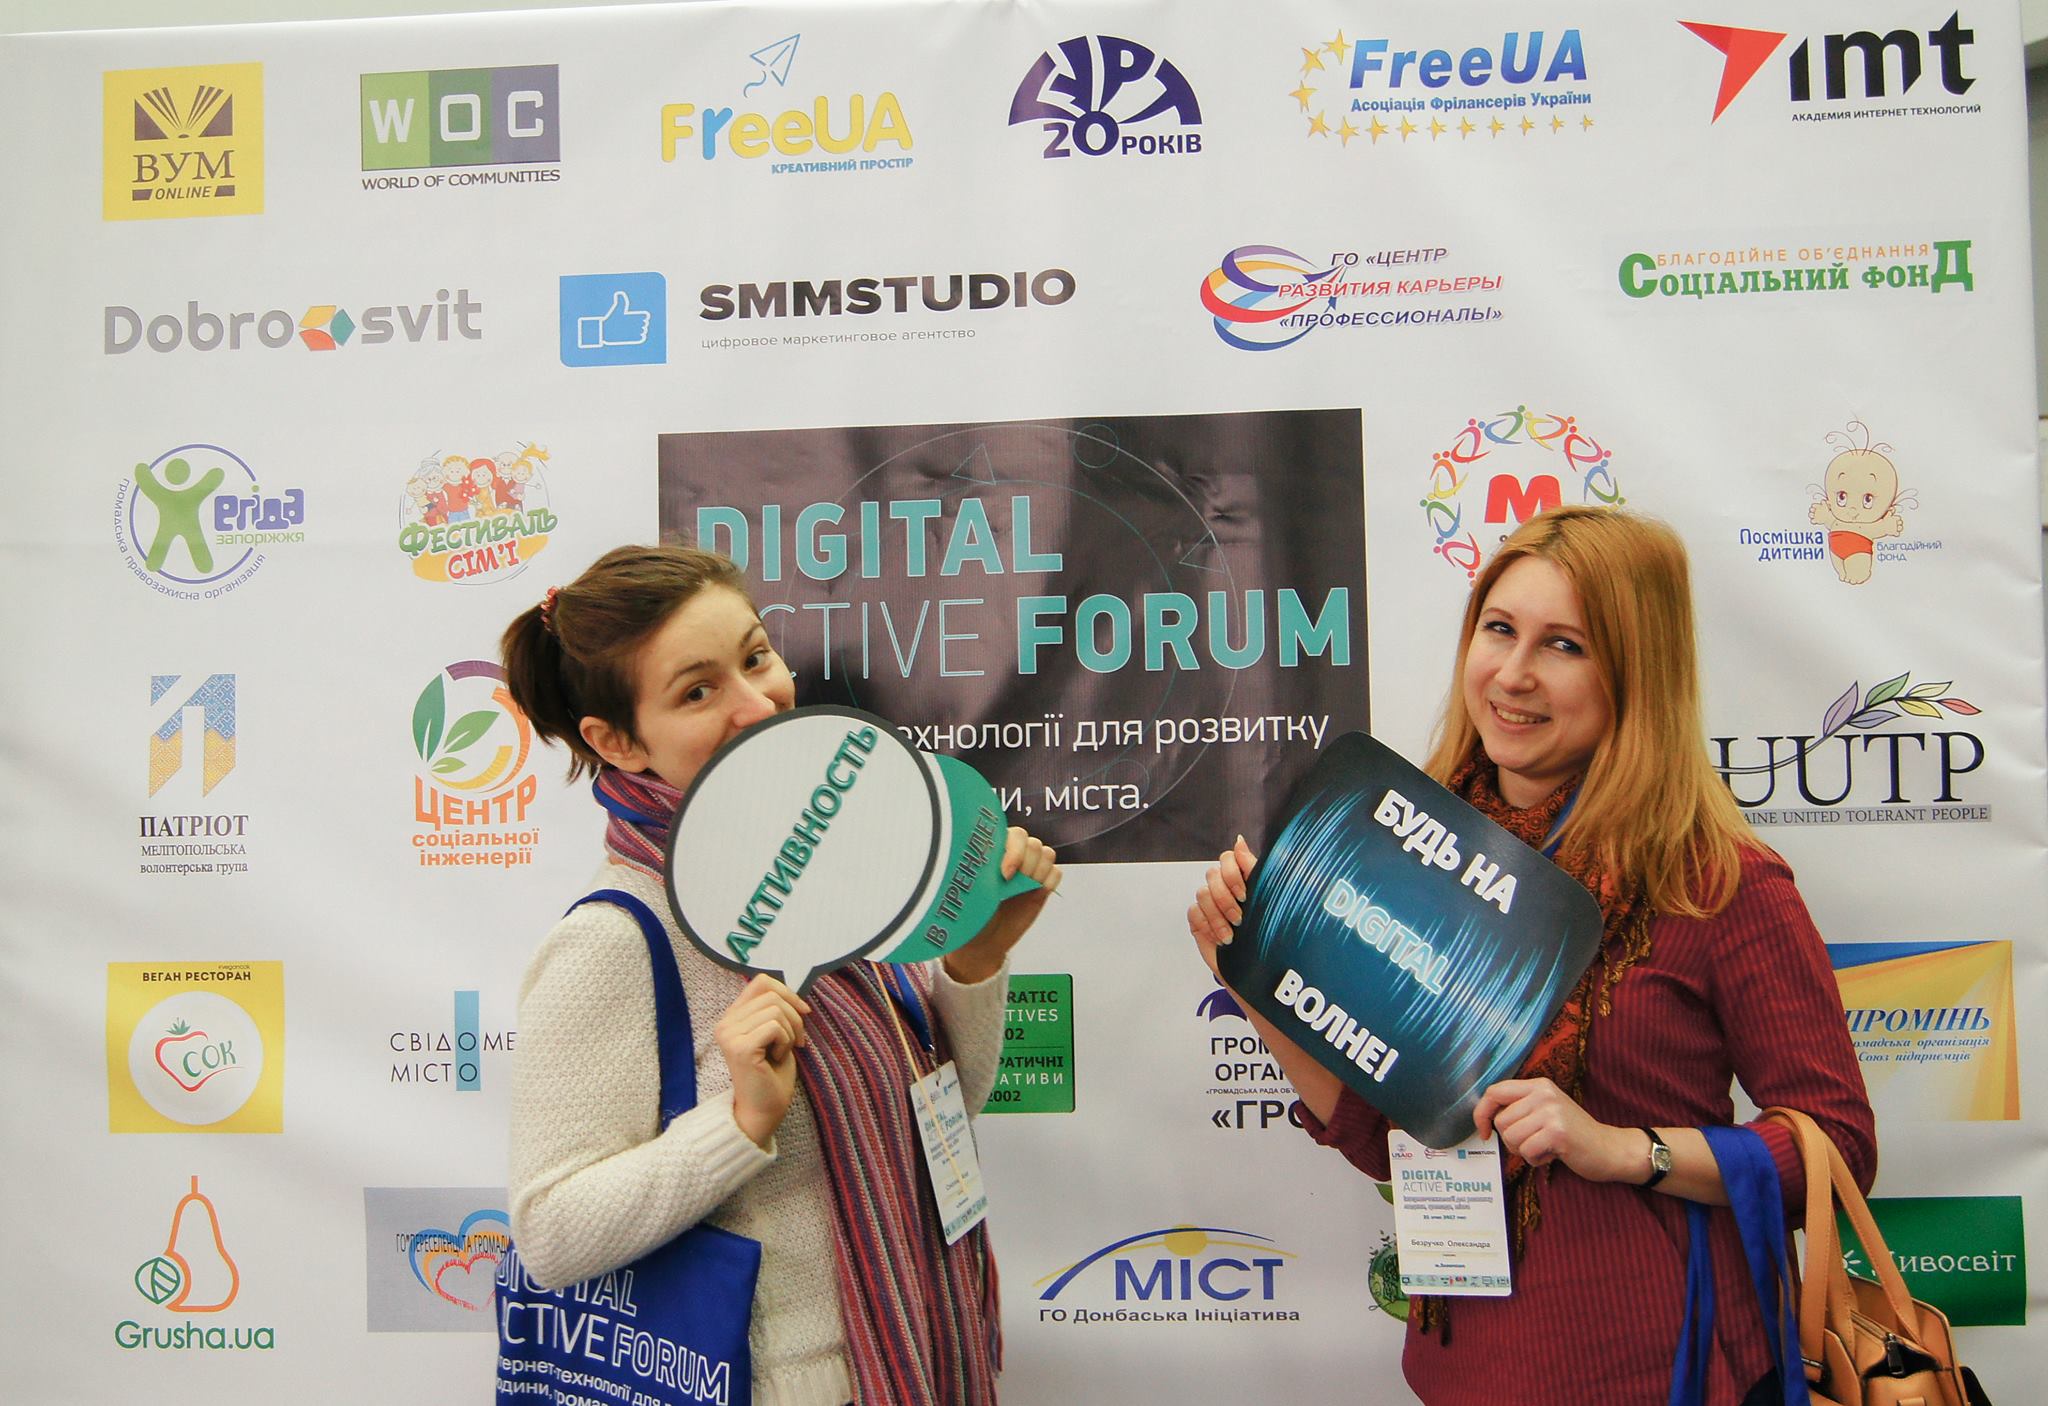 Digital Active Forum: Интернет-технологии для развития человека, общества, города